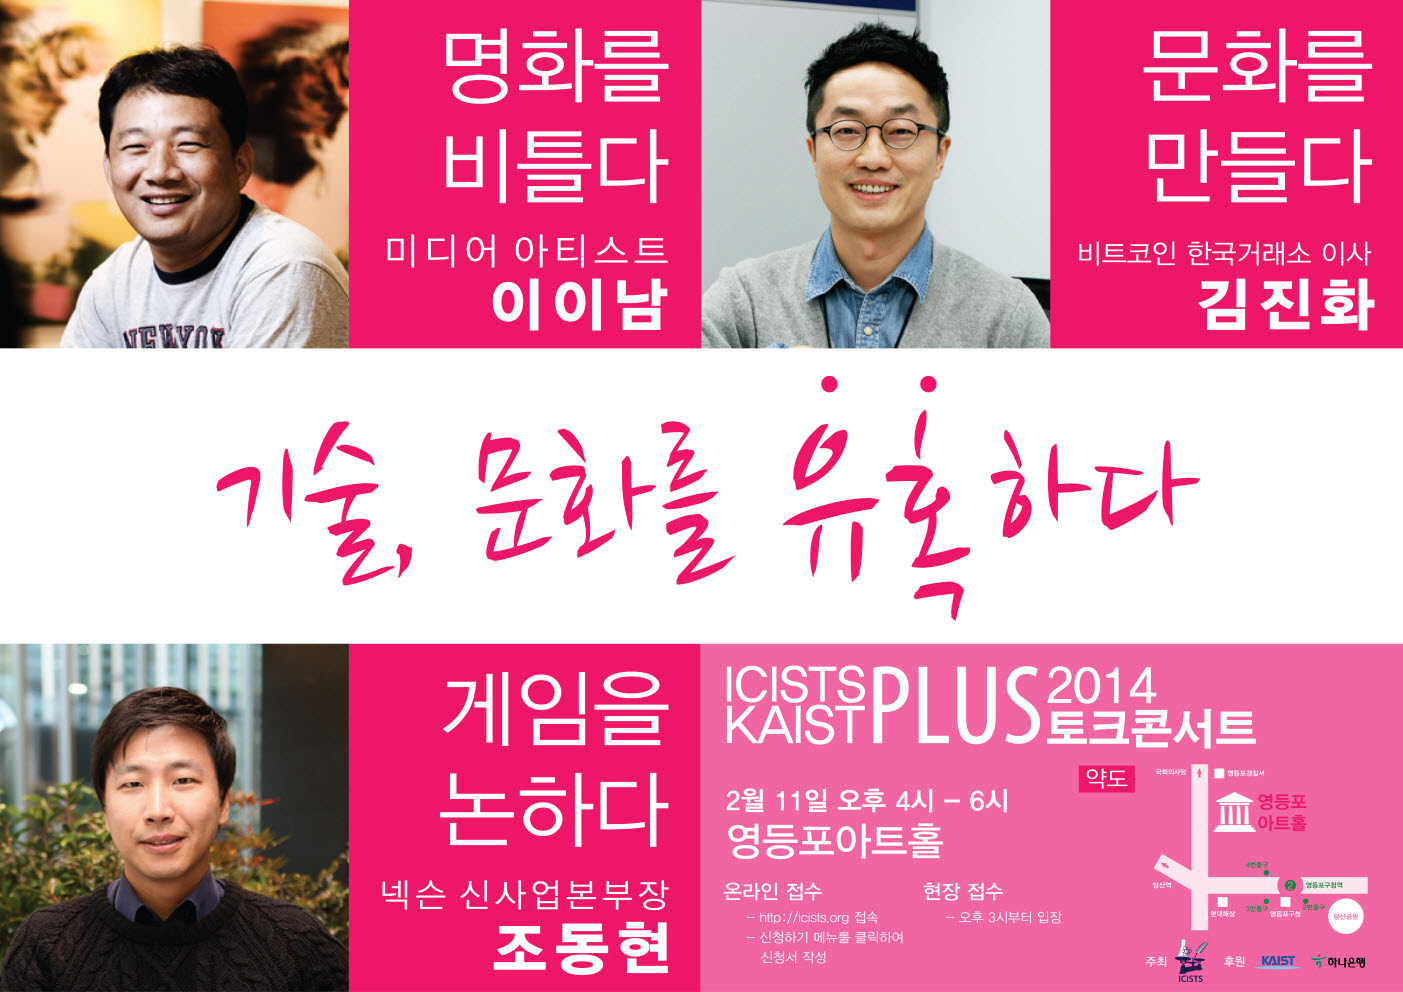 ICISTS-KAIST PLUS+ 2014 토크콘서트 개최 이미지